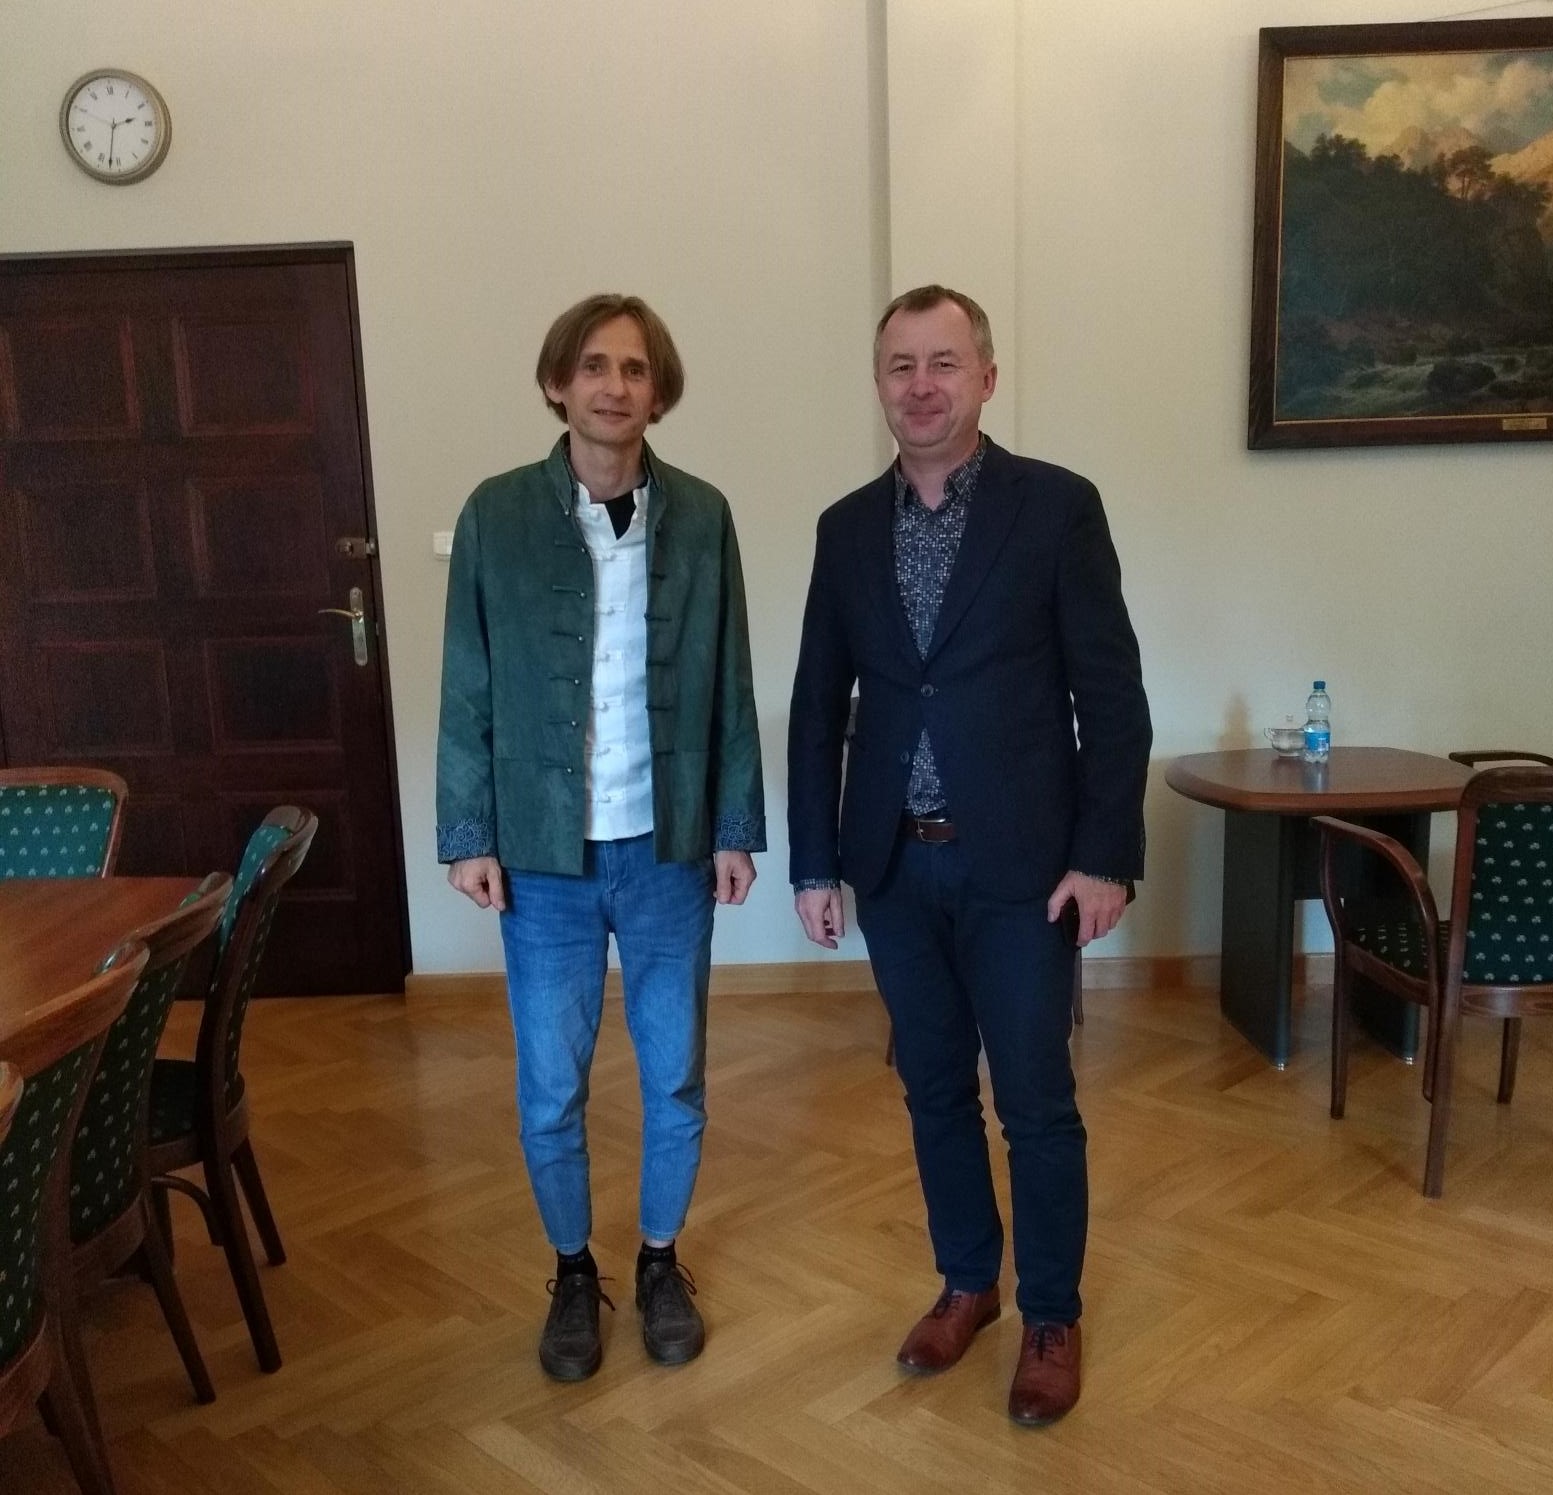 Dziekan WFPiK prof. Tomasz Mizerkiewicz i dr Paweł Zacharewicz stoją obok siebie w gabinecie dziekańskim, uśmiechają się do aparatu.